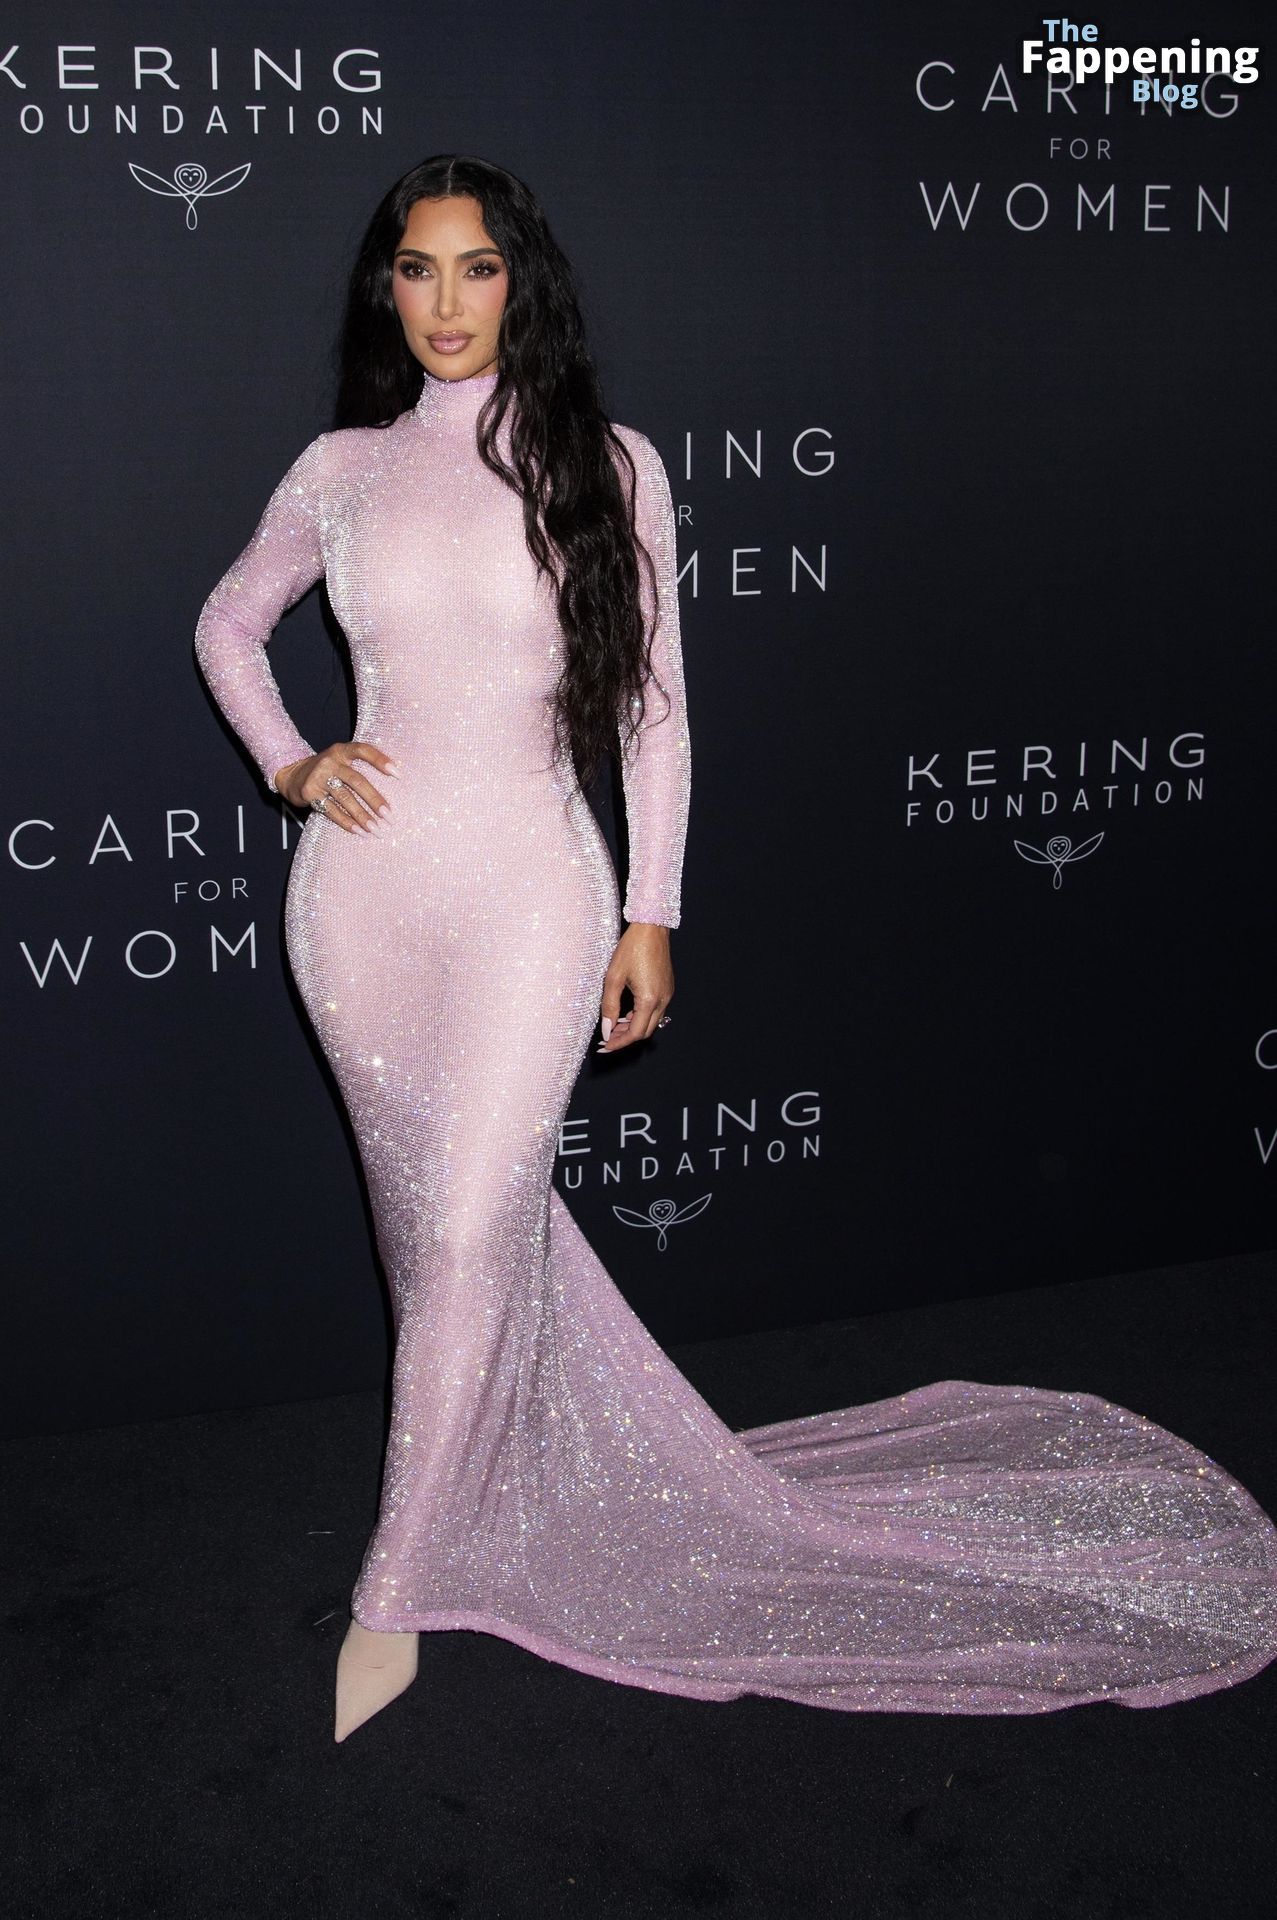 Kim-Kardashian-Sexy-52-The-Fappening-Blog.jpg